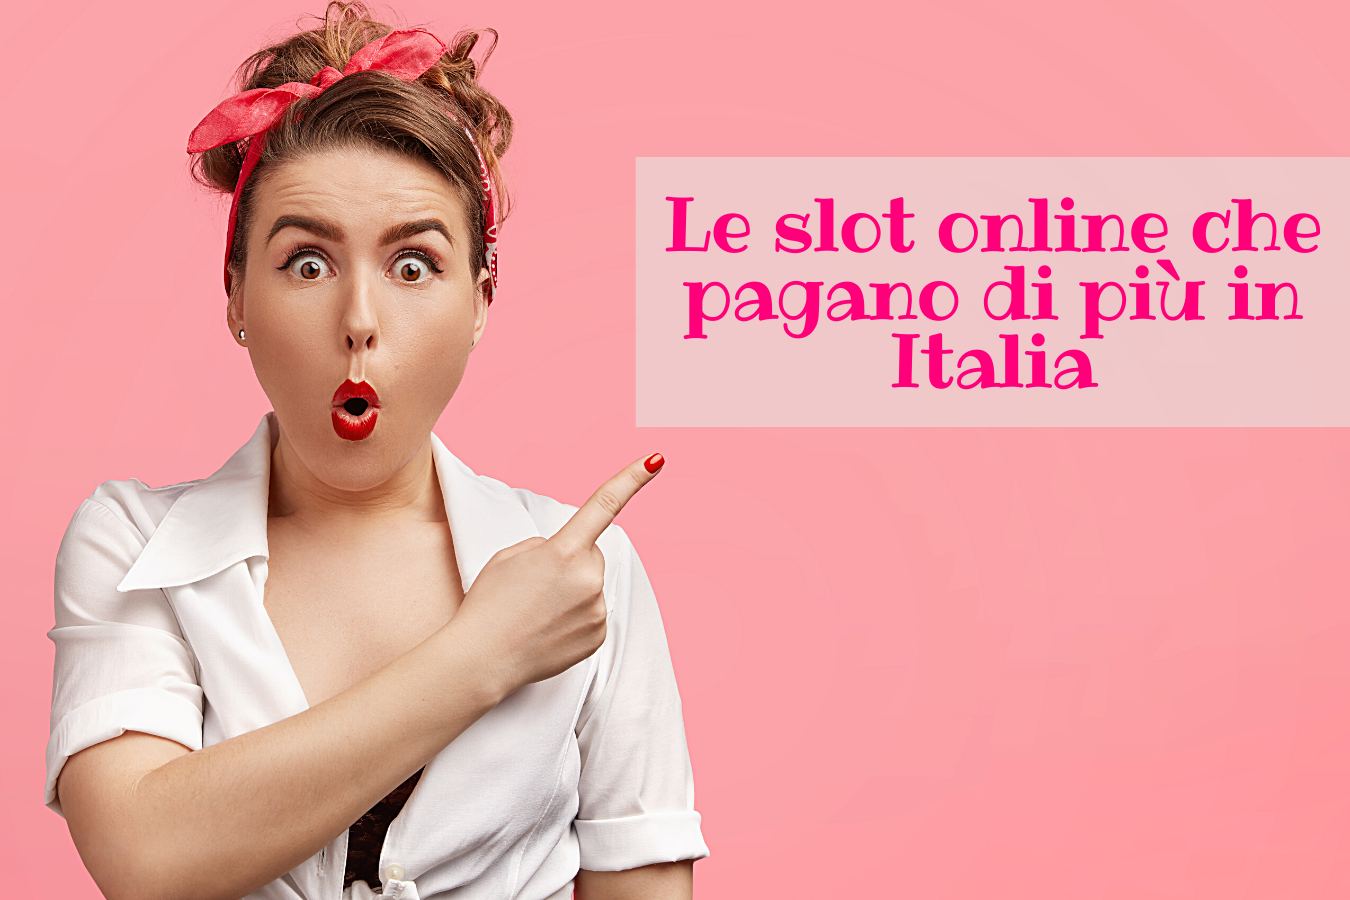 Le slot online che pagano di più in Italia